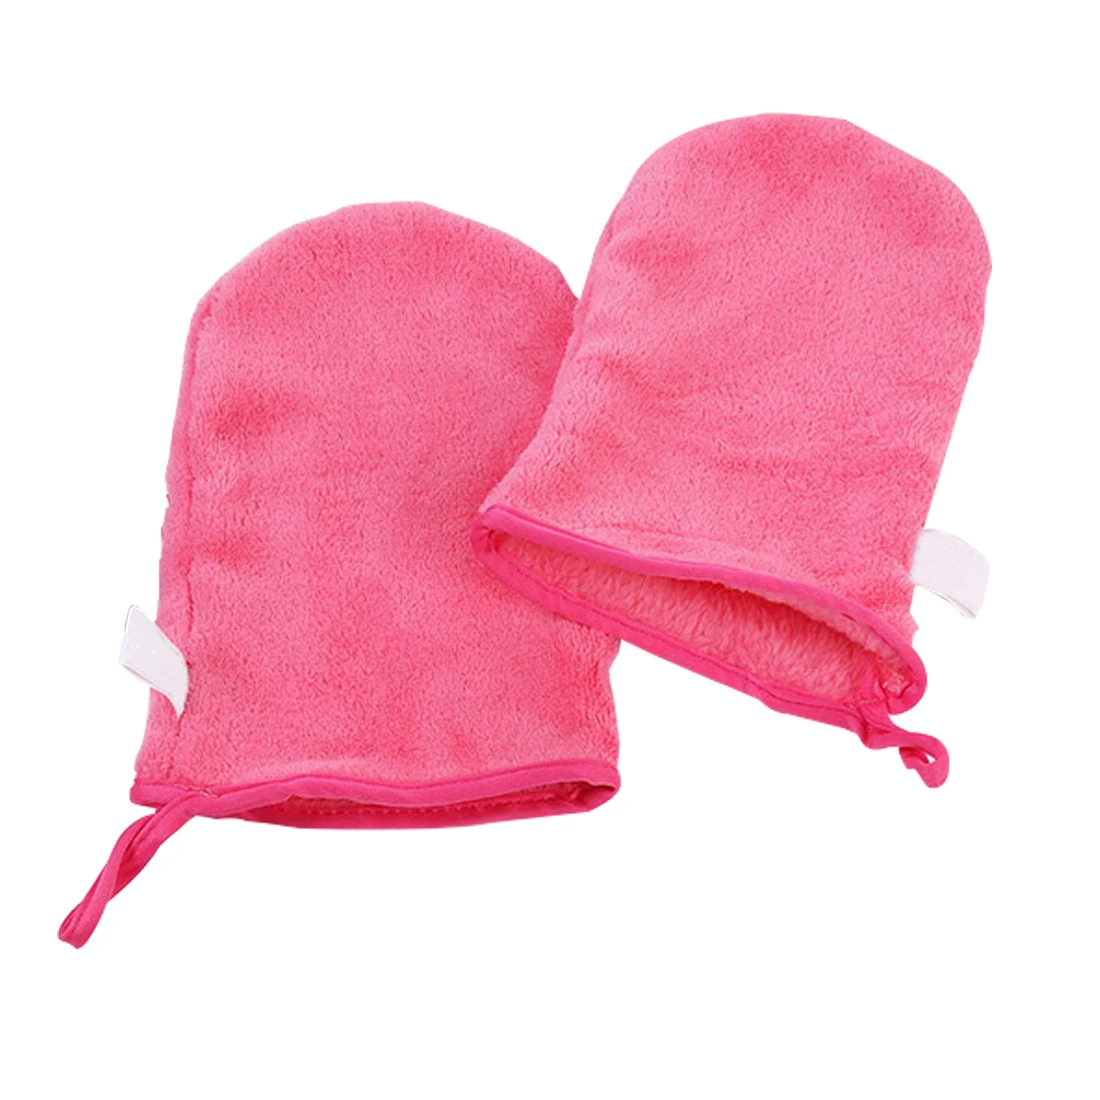 Топ 1 шт. макияж удалить перчатки более портативный, чтобы нести чем для снятия макияжа полотенце дешевле, чем удалить макияж полотенце